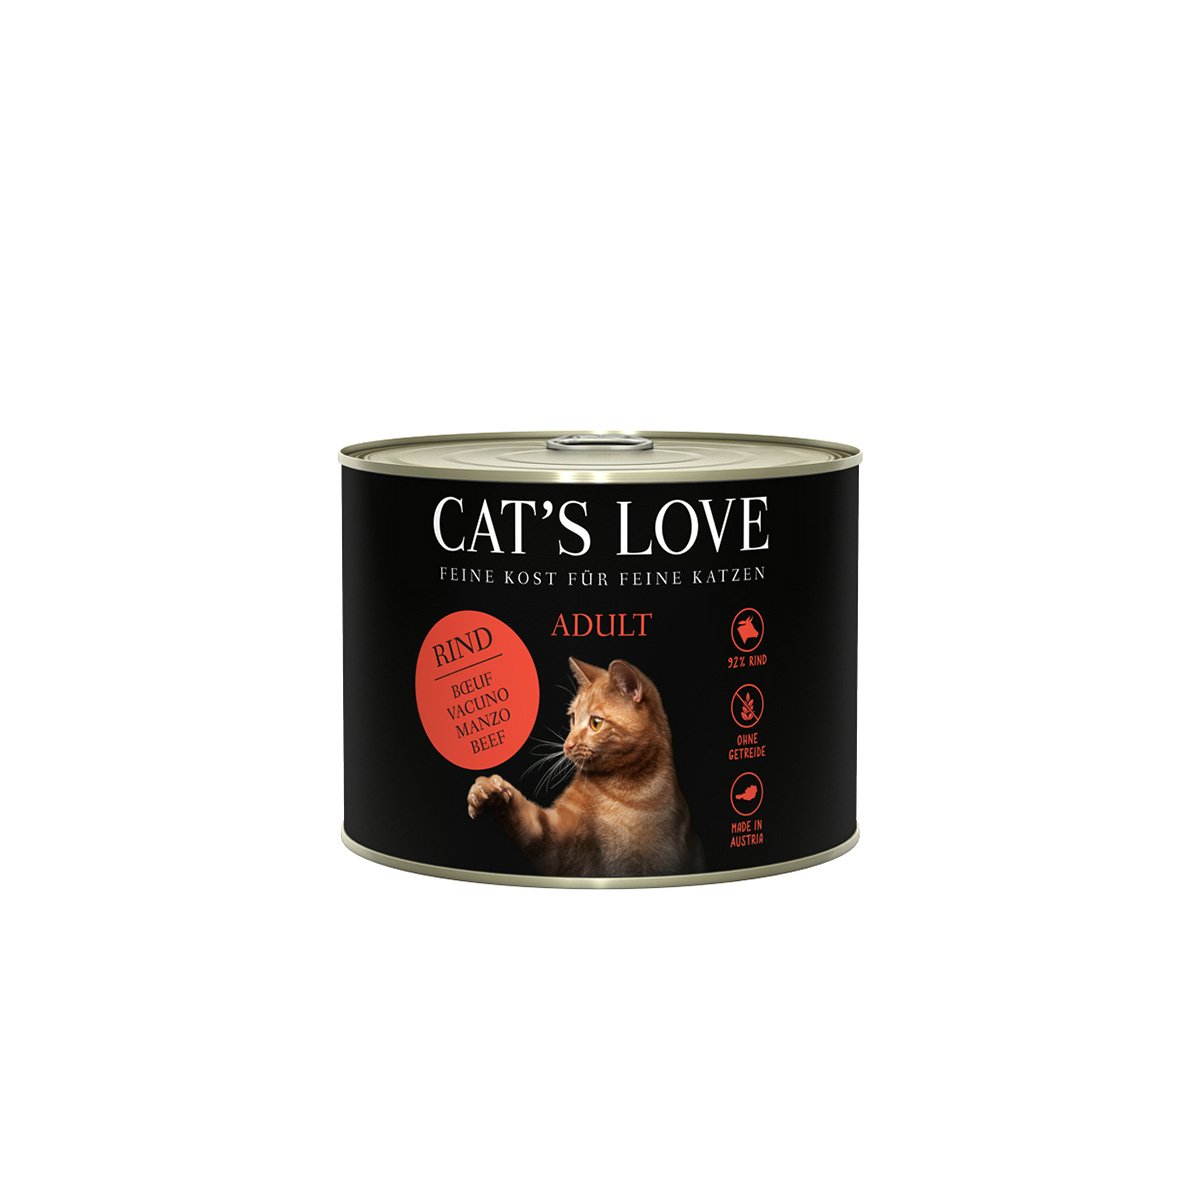 Cat's Love konzerva, čisté hovězí maso, světlicový olej a pampeliška 6× 200 g